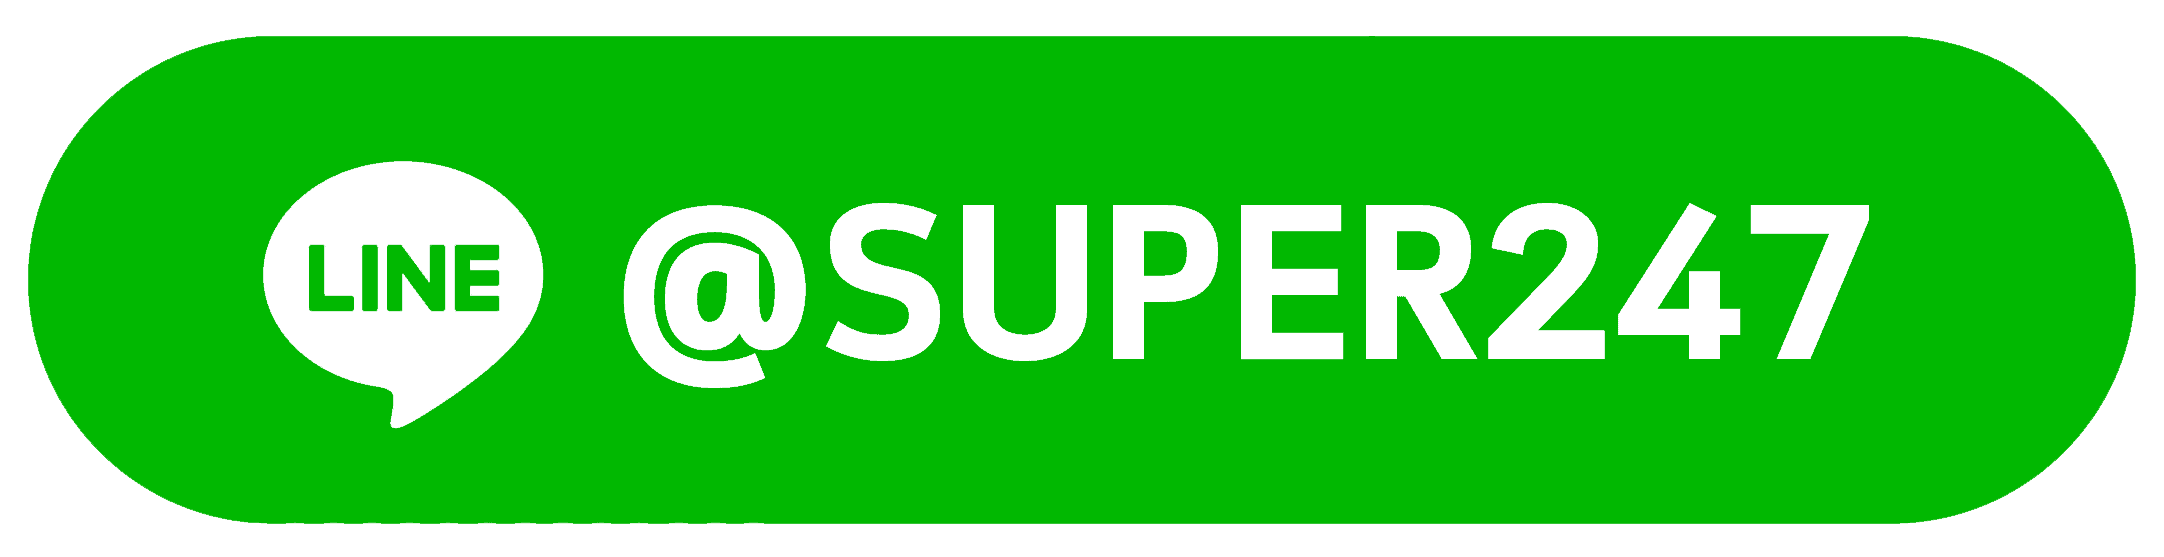 สมัคร Superslot ติดต่อ SUPERSLOT ทาง LINE